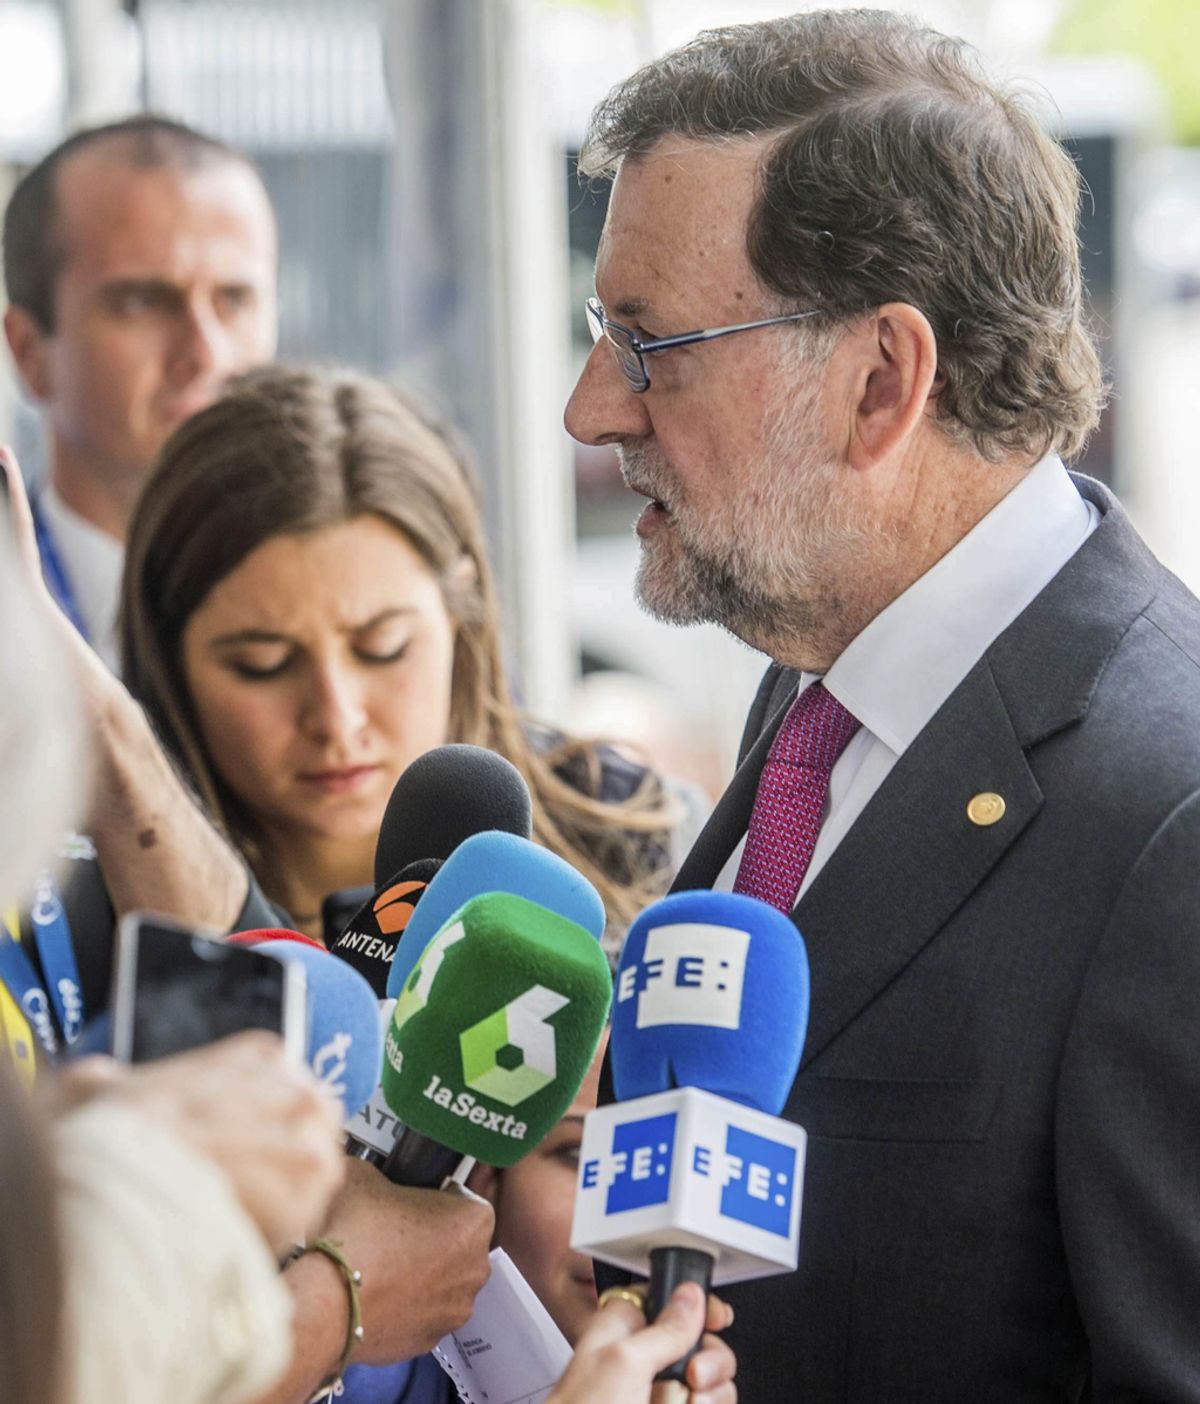 Rajoy a Cameron: "Que no quiera quedarse solo con lo que le interesa de la UE"